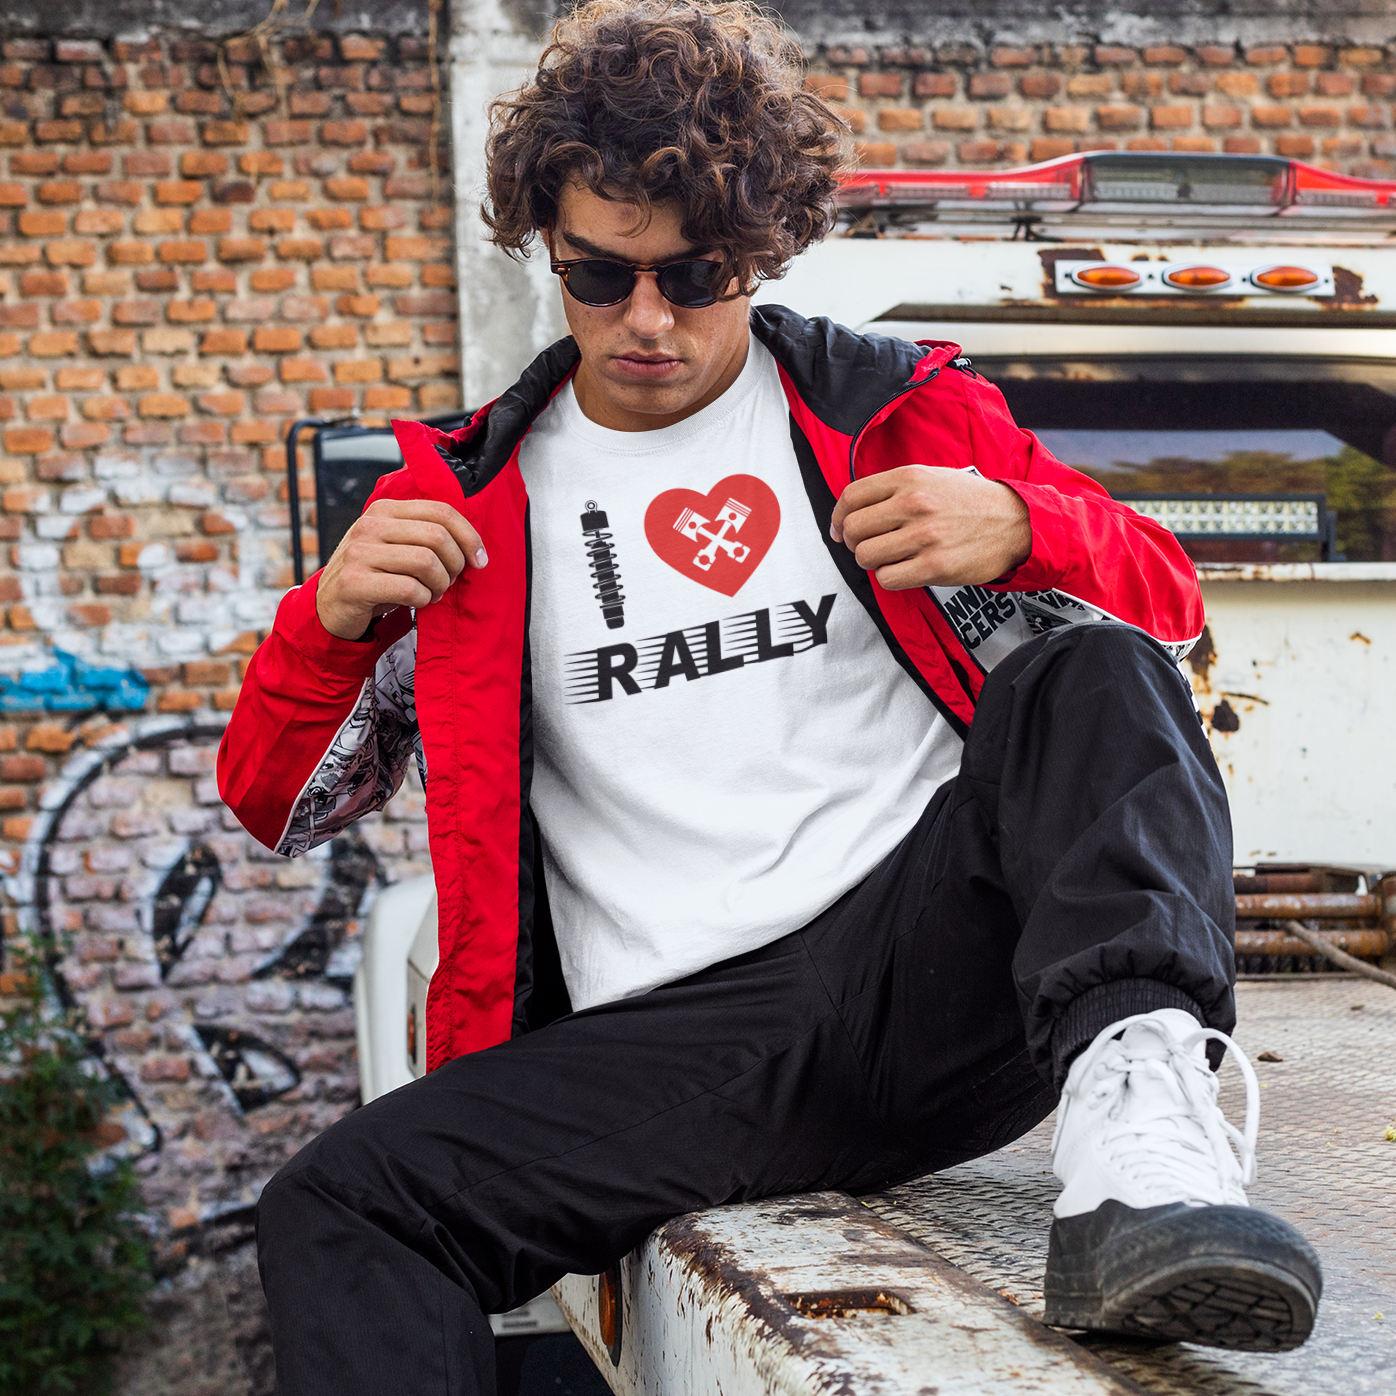 Camiseta "I love Rally"